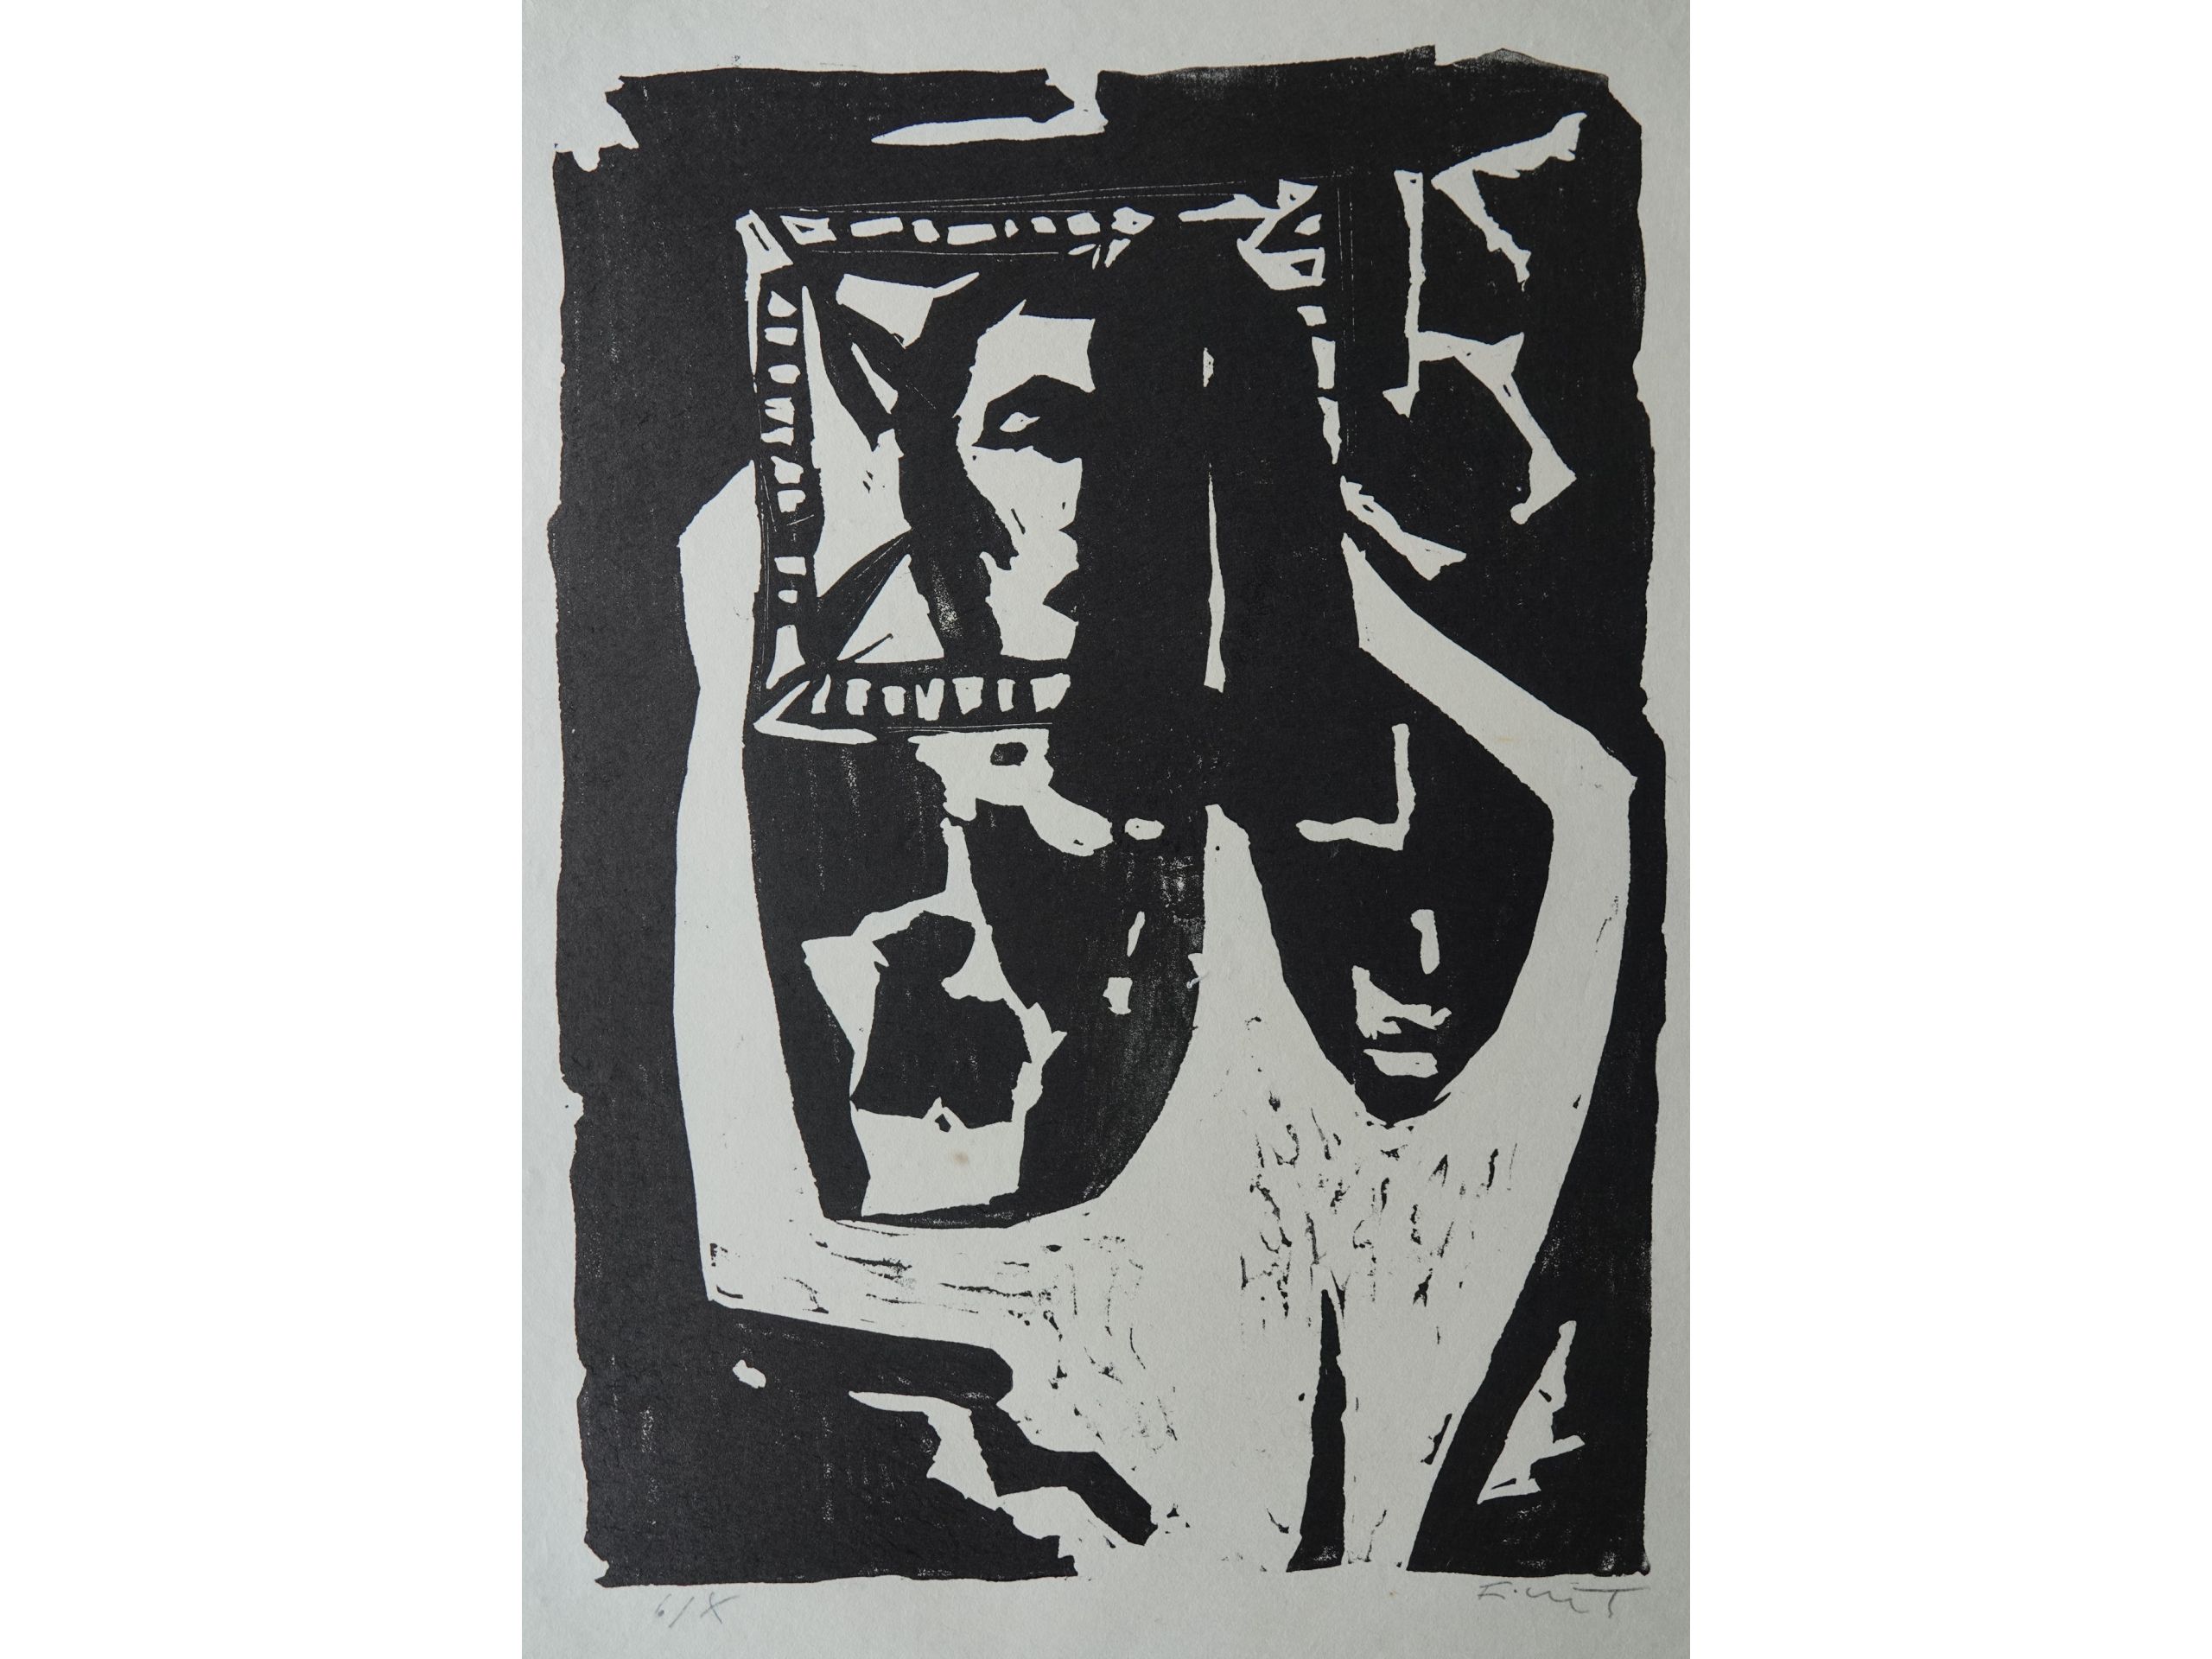 André Ficus, 'Frau vor Spiegel', um 1960, Linolschnitt, 60 x 50 cm, 100 € 